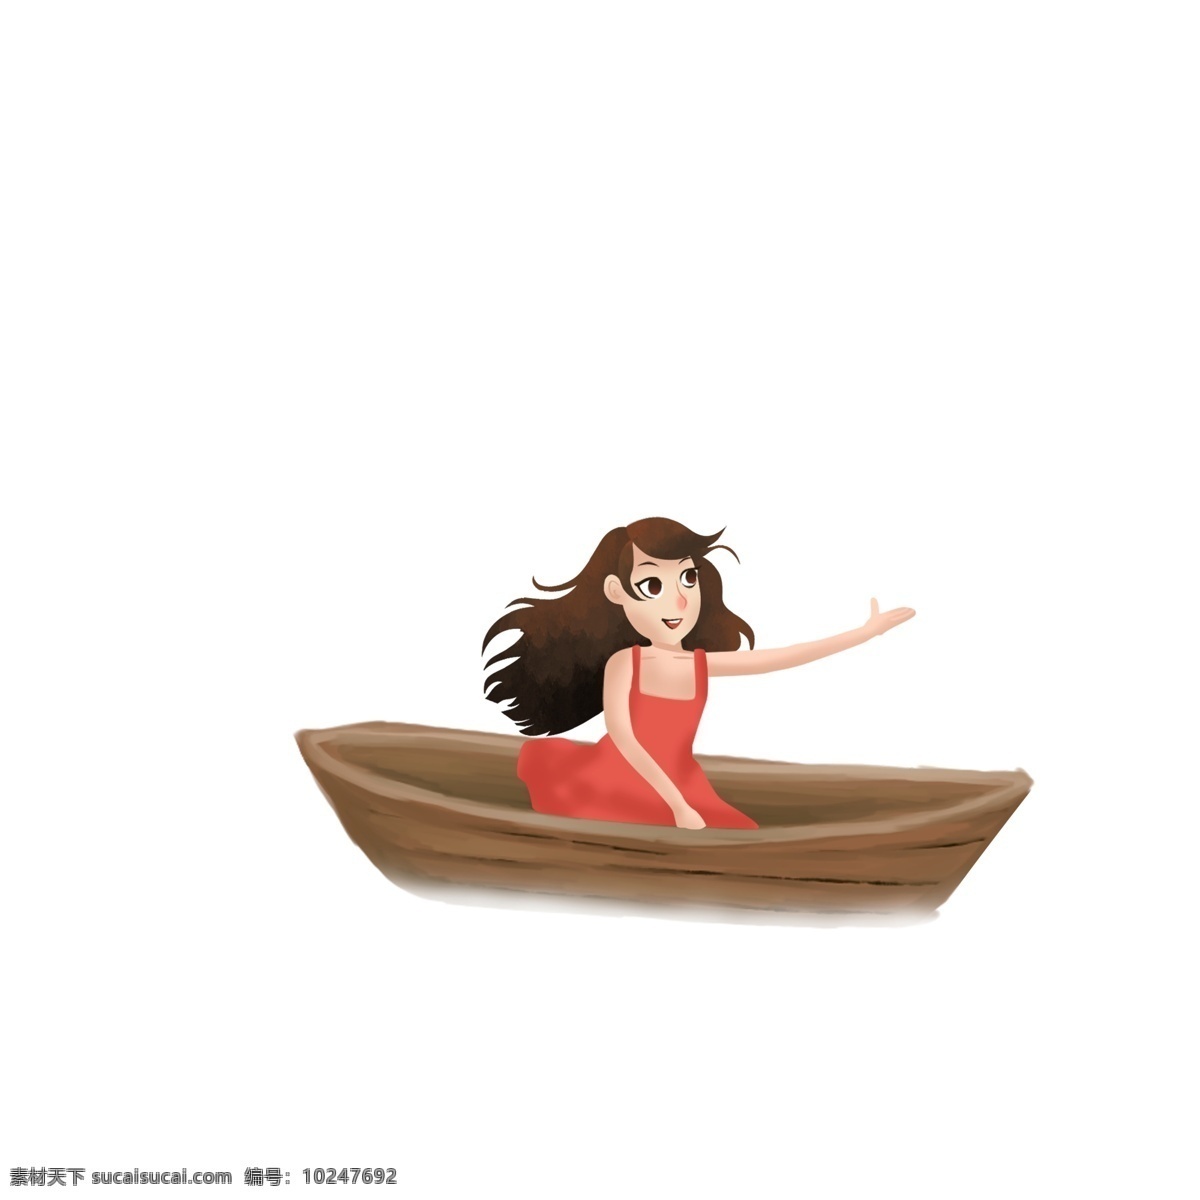 卡通 可爱 一个 坐船 女孩 旅游 手绘 少女 乘船 人物设计 女生